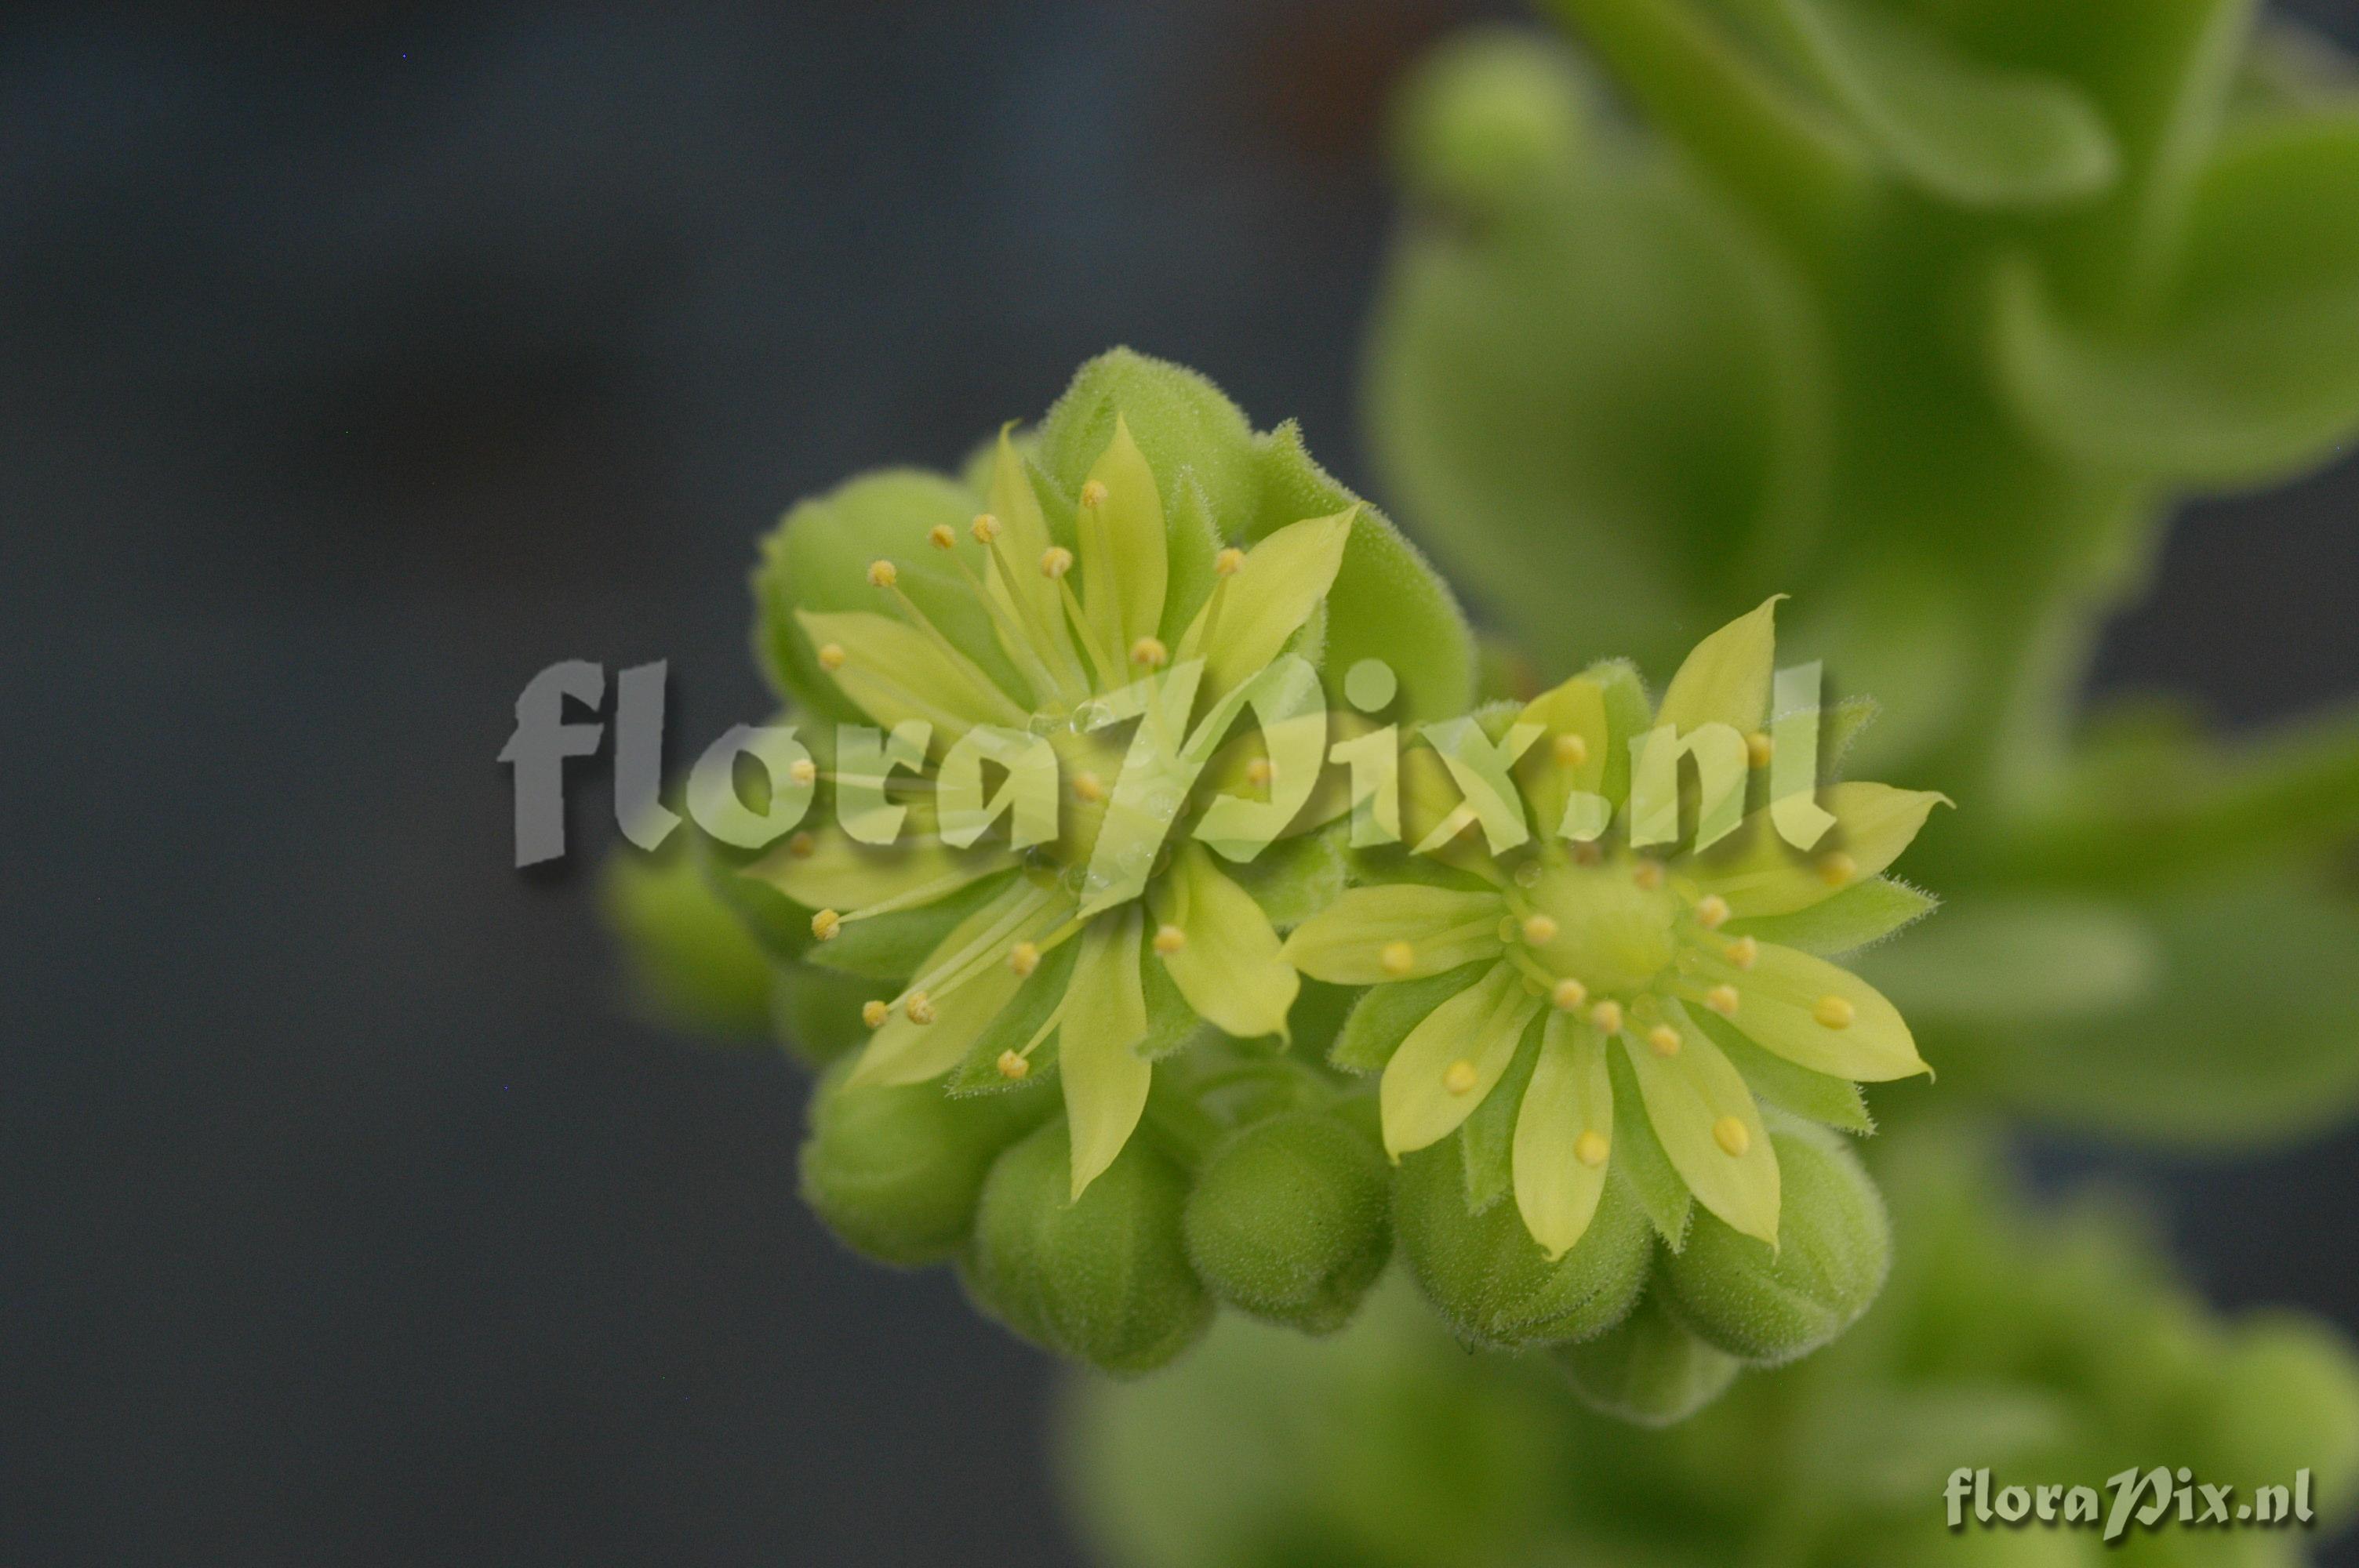 Rhynchoglossum notonianum 1986GR00050